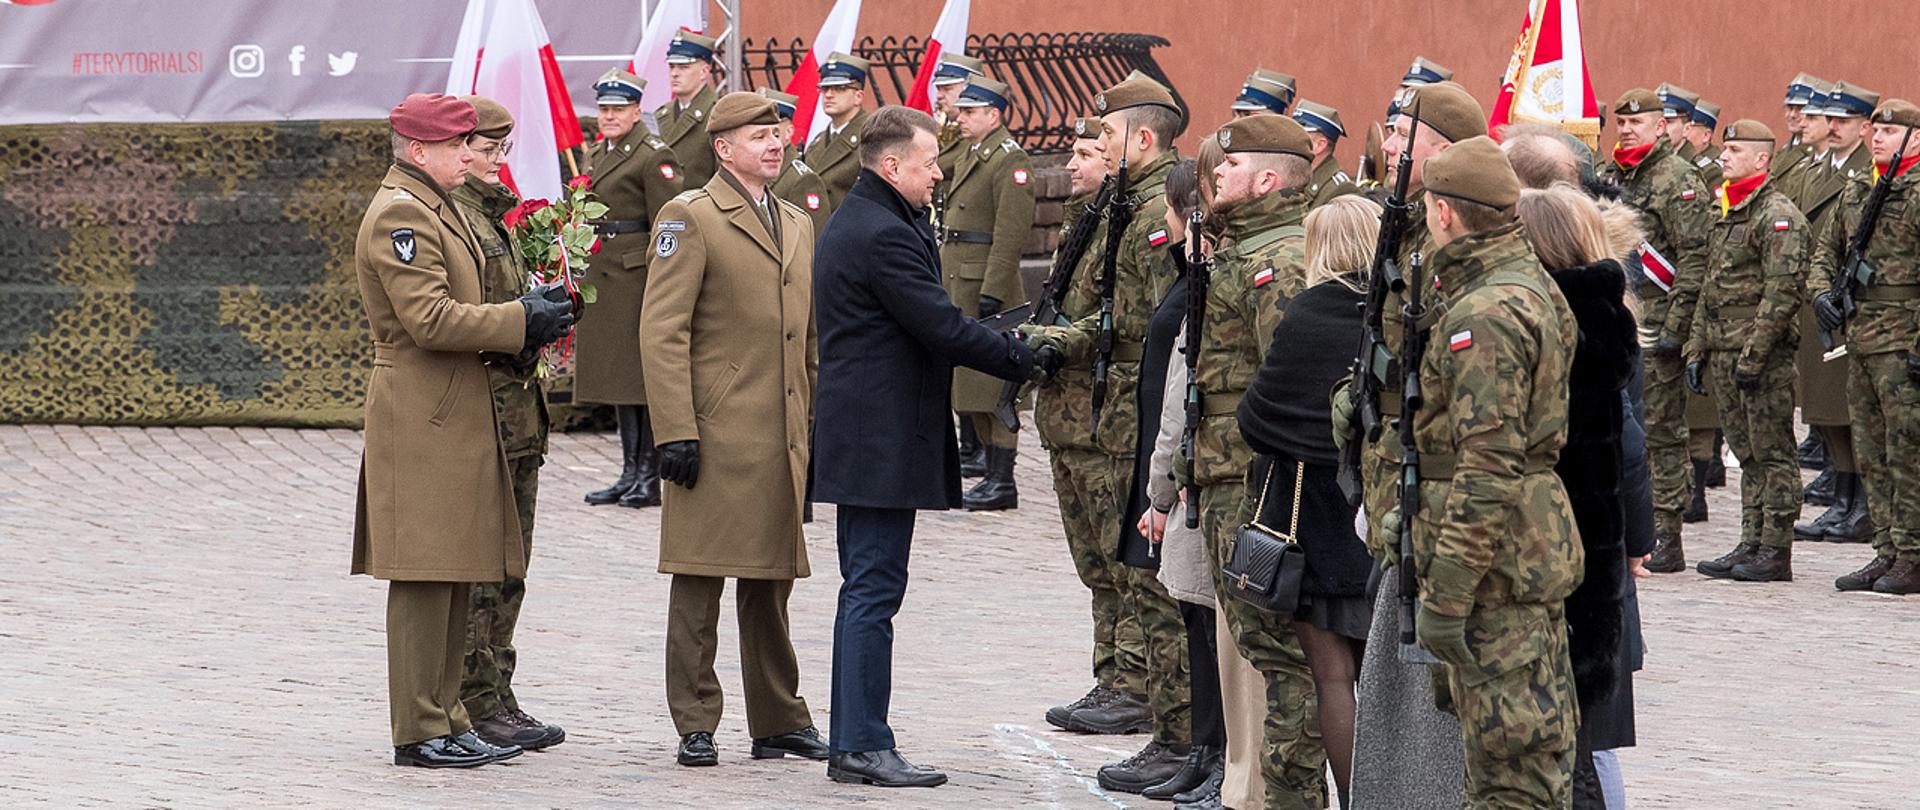 W niedzielę, 26 lutego br. na Placu Zamkowym w Warszawie, szef MON uczestniczył w przysiędze wojskowej żołnierzy 18. Stołecznej Brygady Obrony Terytorialnej. 